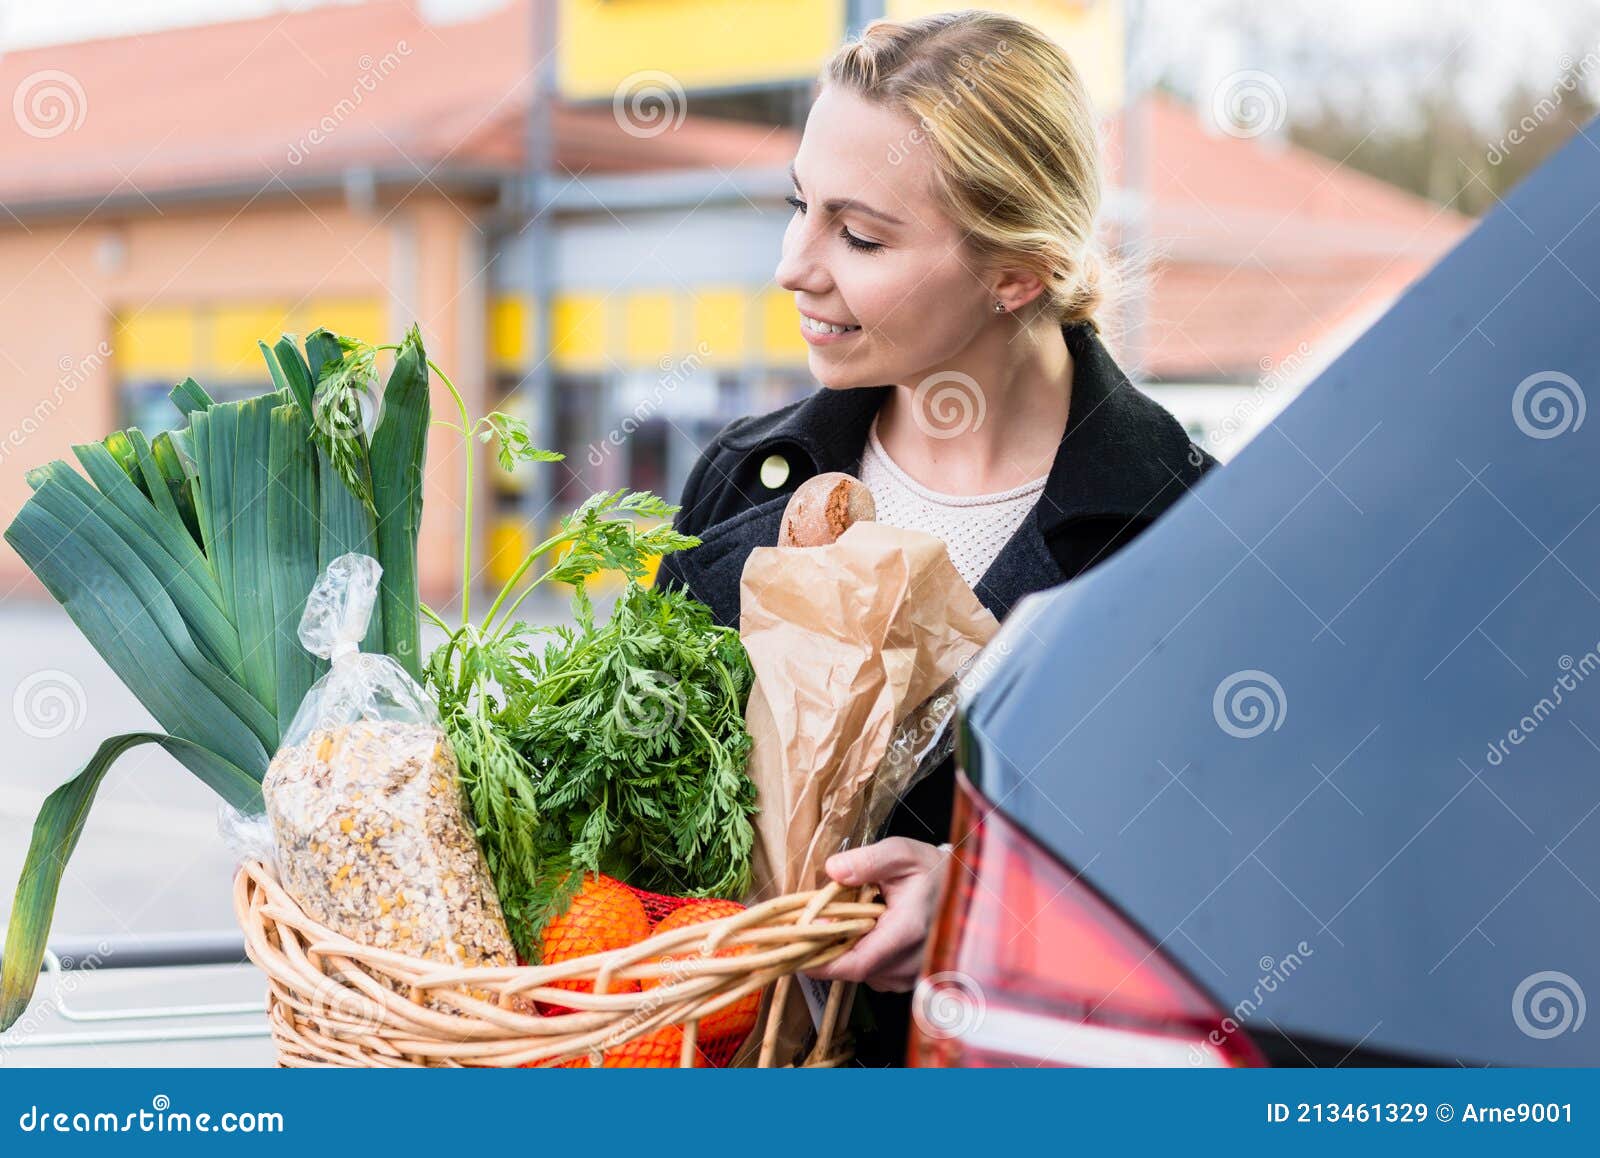 Frau Mit Einkaufskorb Mit Lebensmitteln in Den Kofferraum Nach Dem  Einkaufen Stockbild - Bild von lebensmittelgeschäft, lagern: 213461329